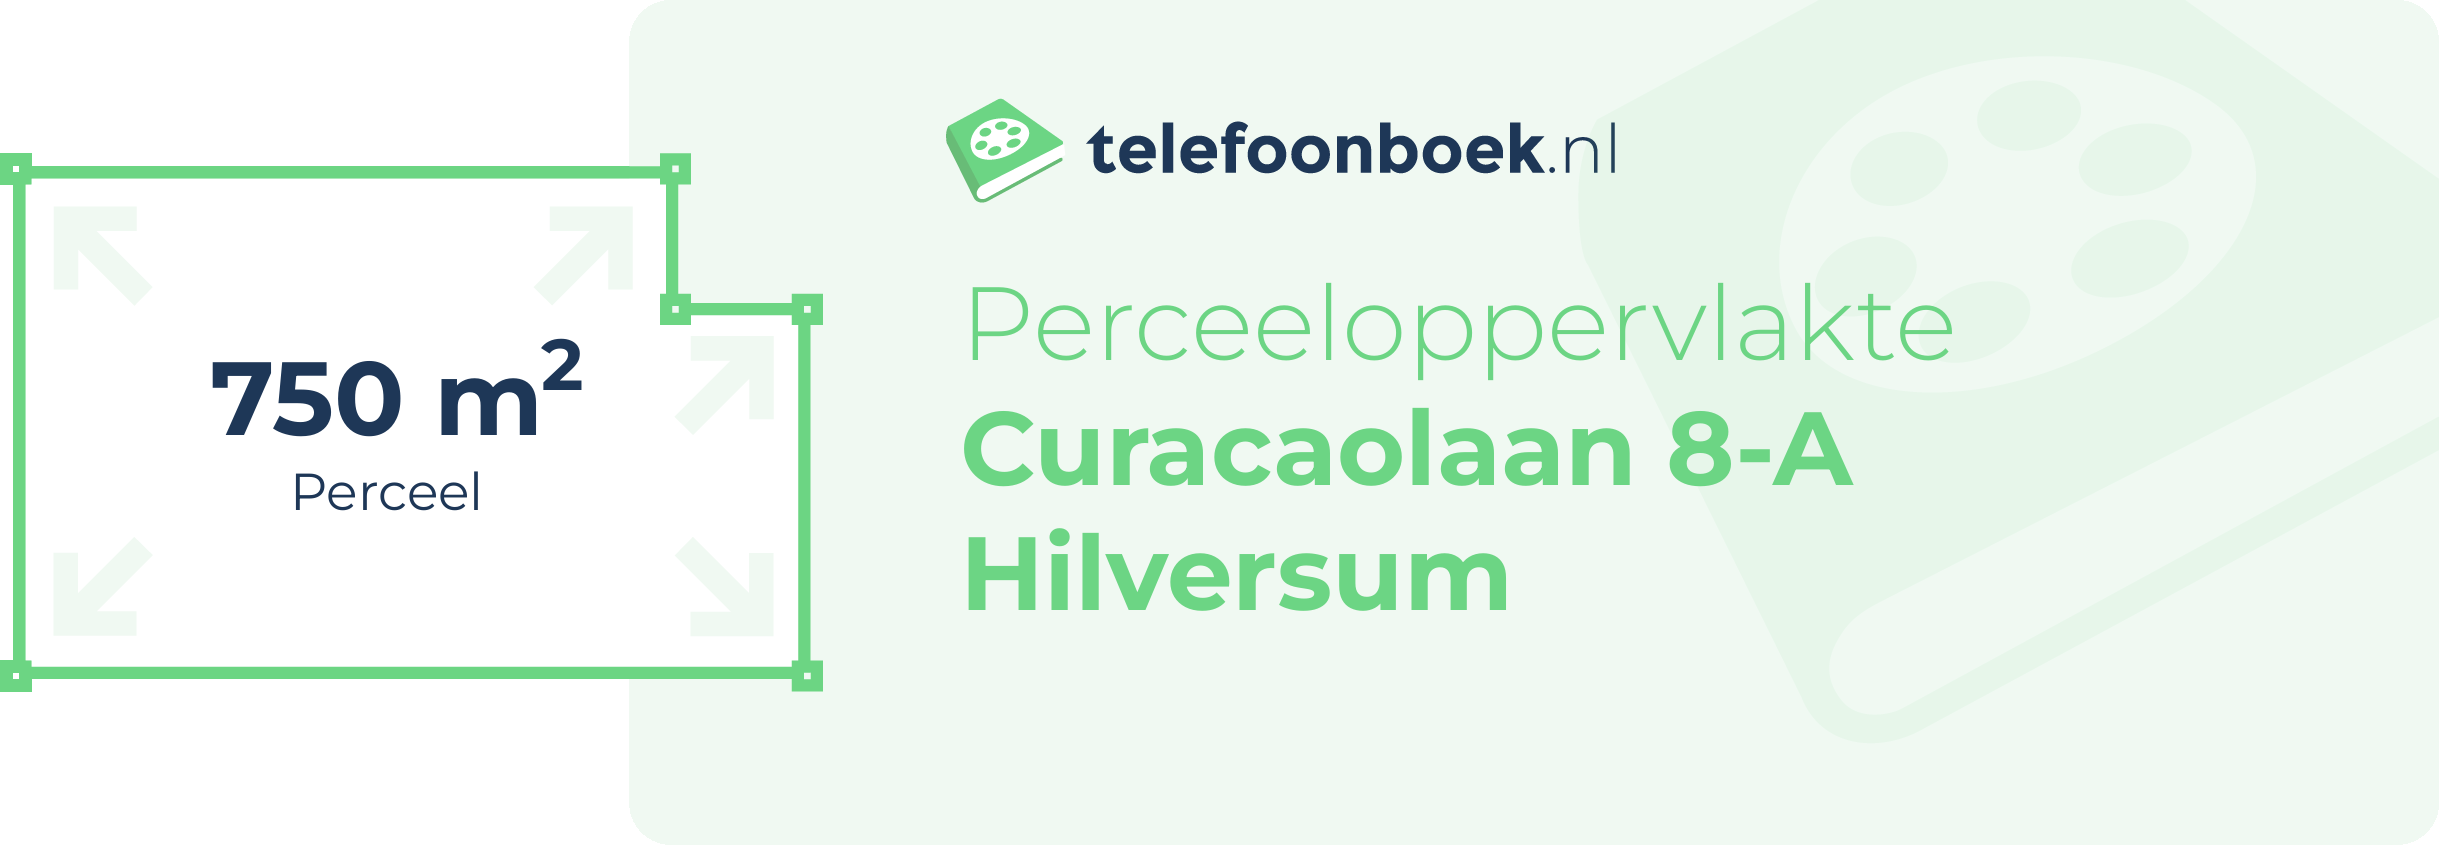 Perceeloppervlakte Curacaolaan 8-A Hilversum